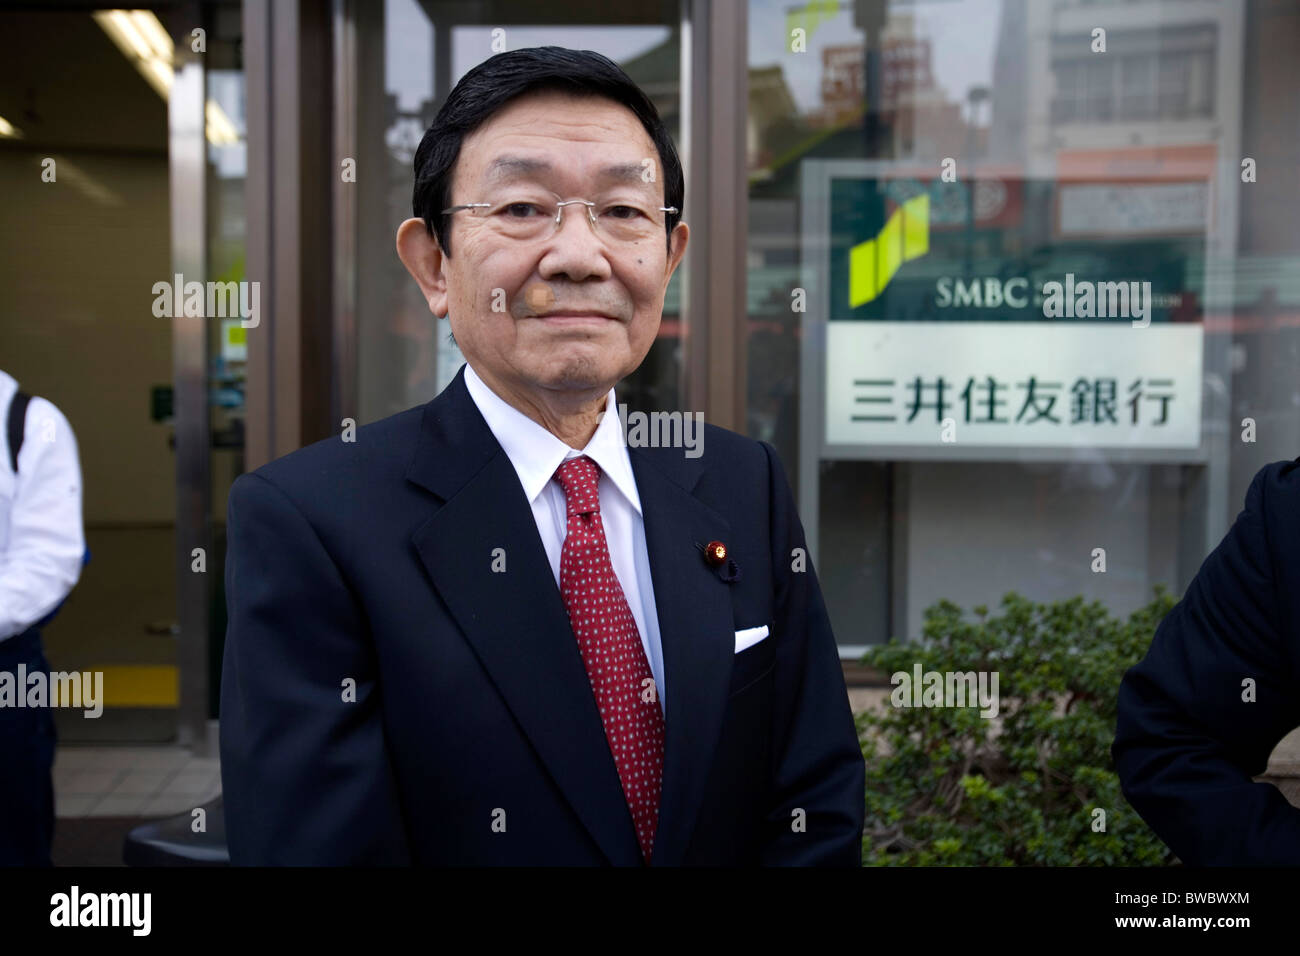 Herr Kaoru Yosano ehemalige Mitglieder der Liberal-Demokratischen Partei Mitglied Tachiagare Nippon "Sunrise Partei Japans". Stockfoto